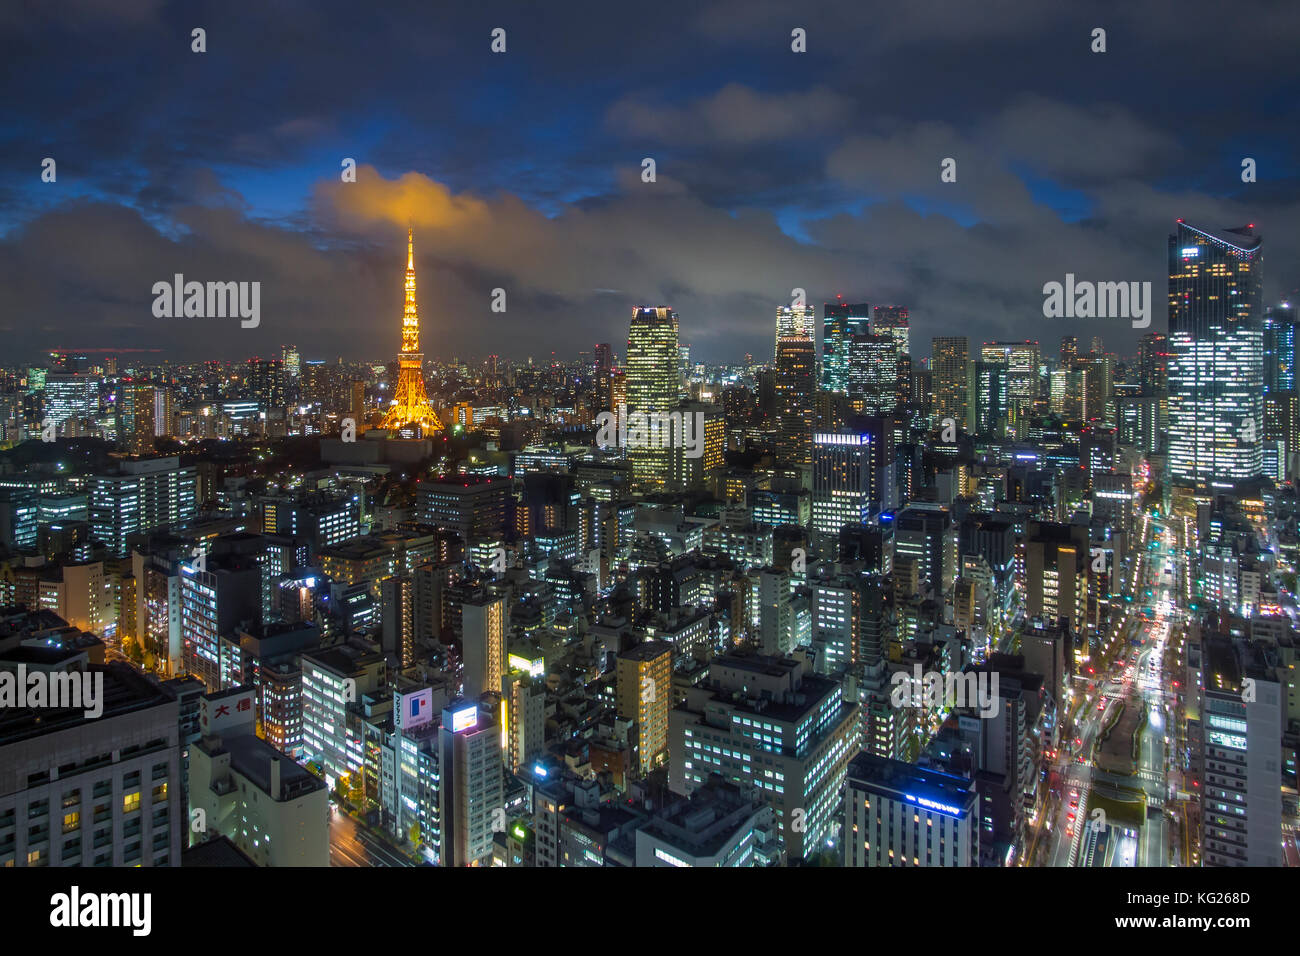 Une vue de la nuit de la ville et la tour de Tokyo illuminée emblématique, Tokyo, Japon, Asie Banque D'Images